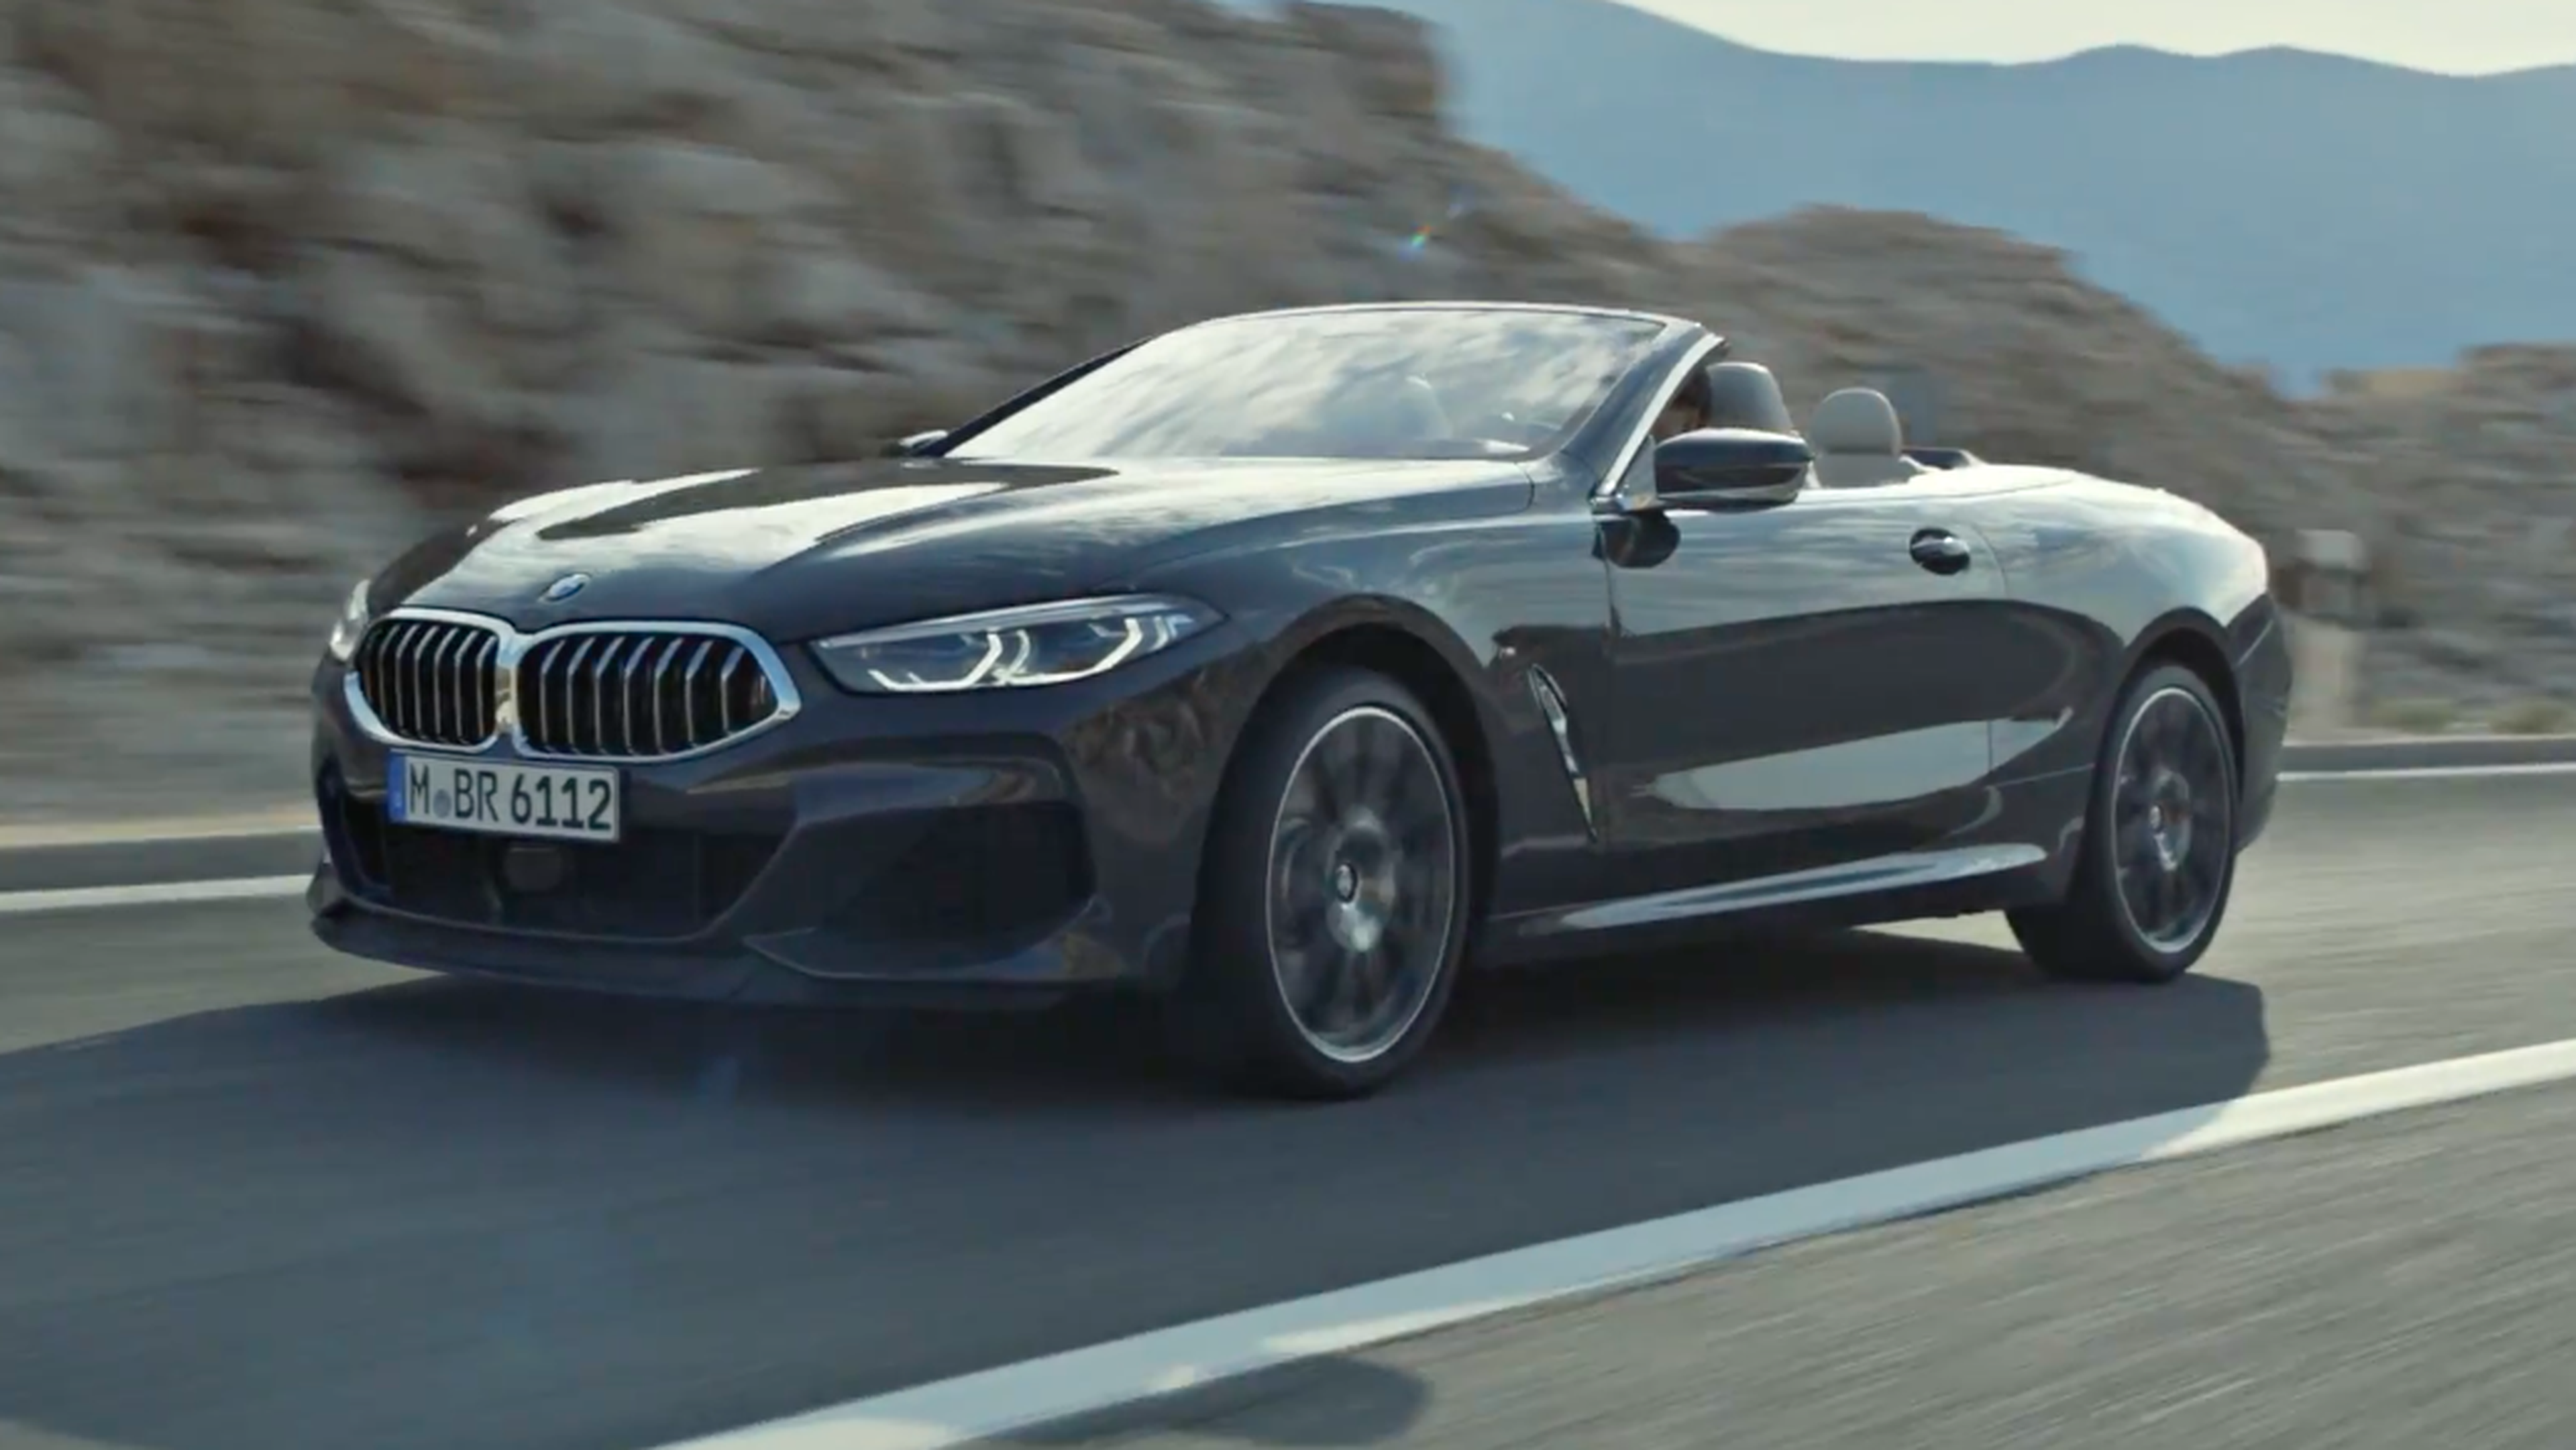 VÍDEO: ¡Wow! El BMW Serie 8 Cabrio en movimiento, qué belleza